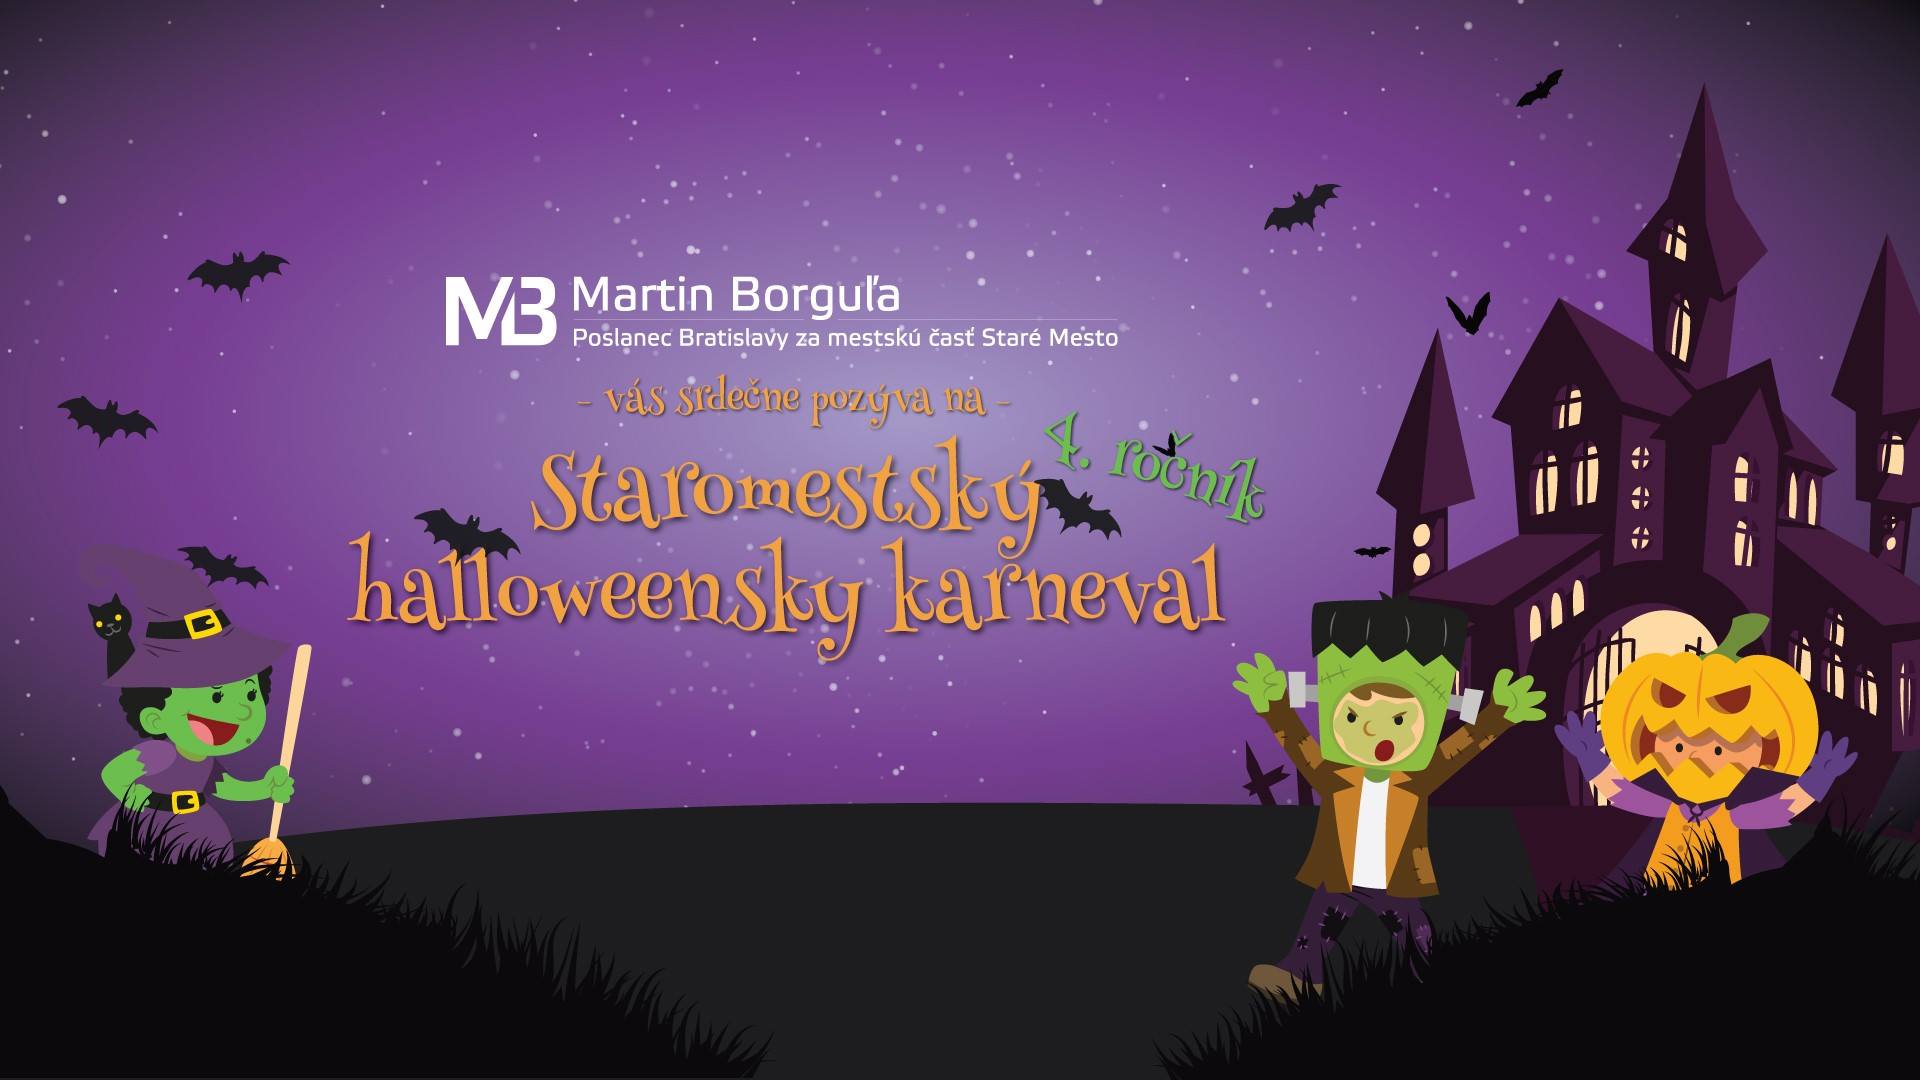 Staromestsk halloweensky karneval 2018 Bratislava - 4. ronk